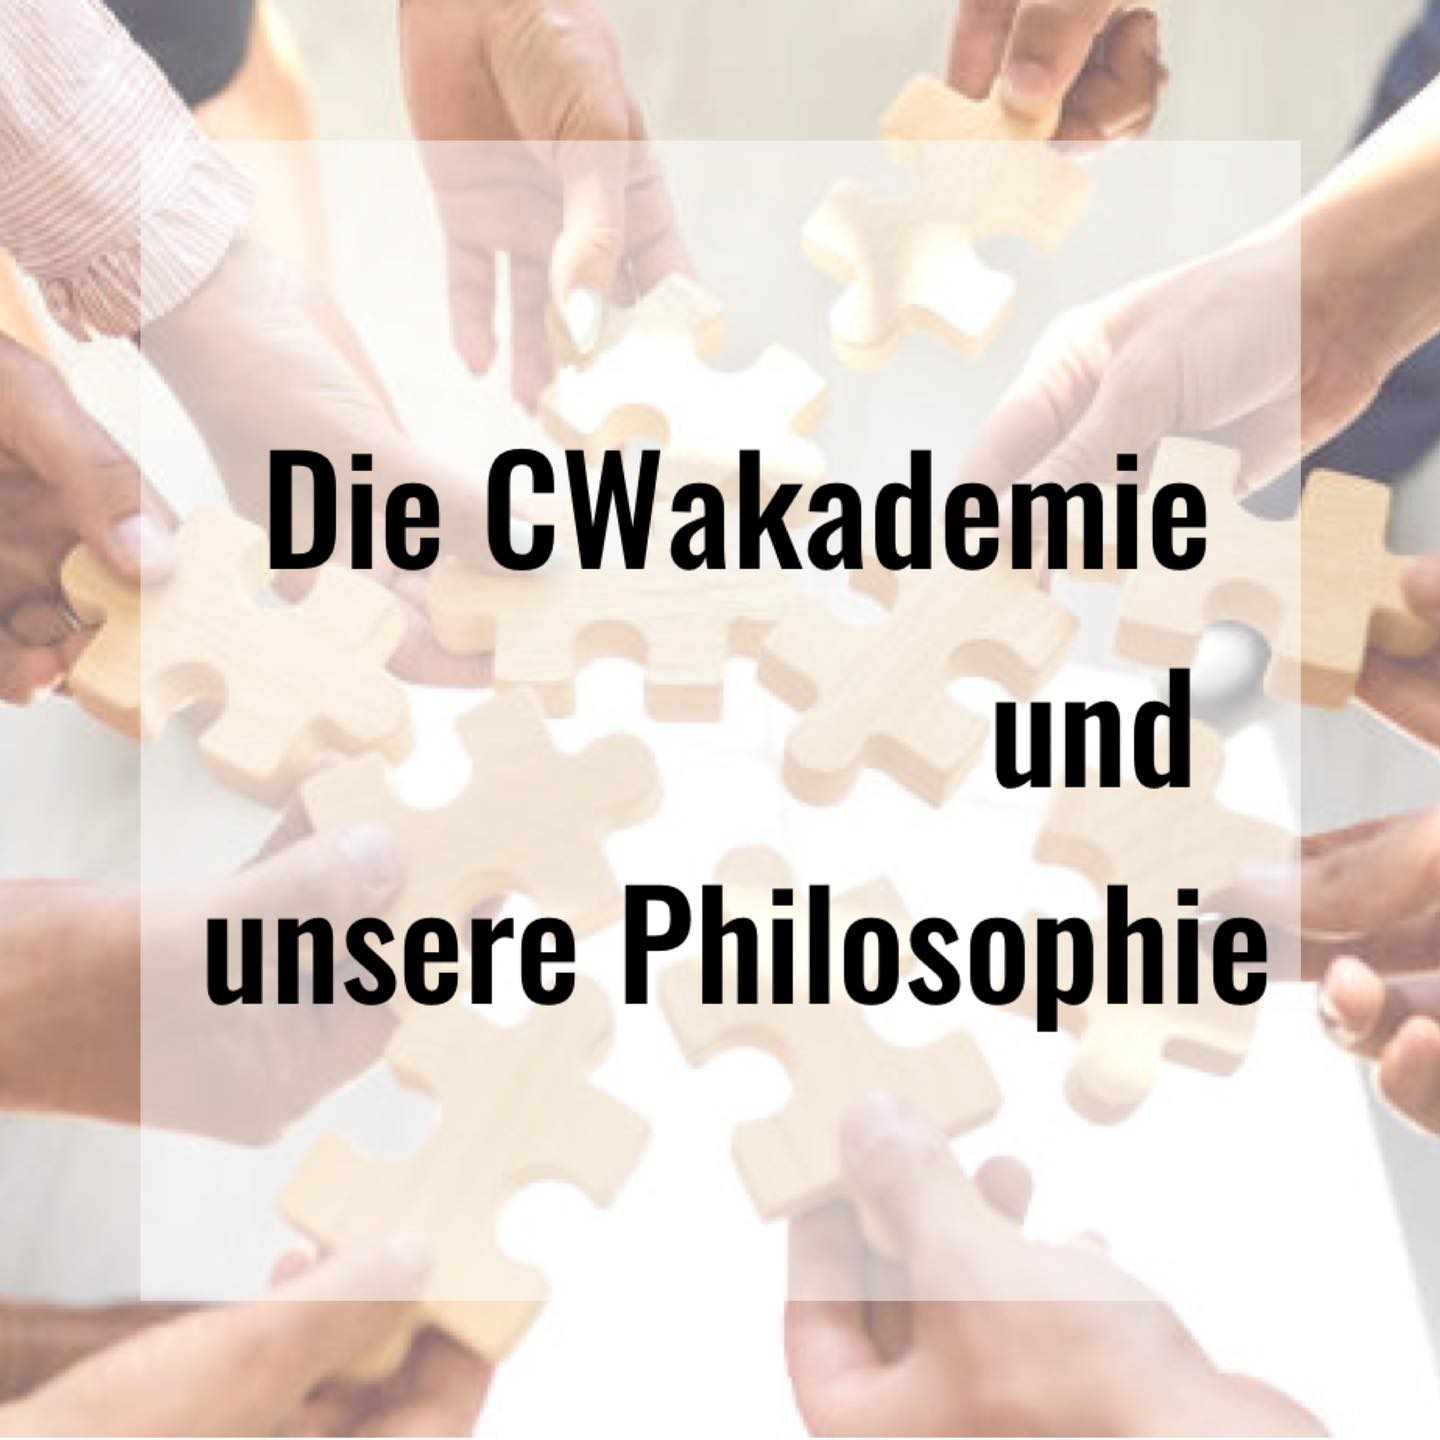 Die CWakademie und unsere Philosophie